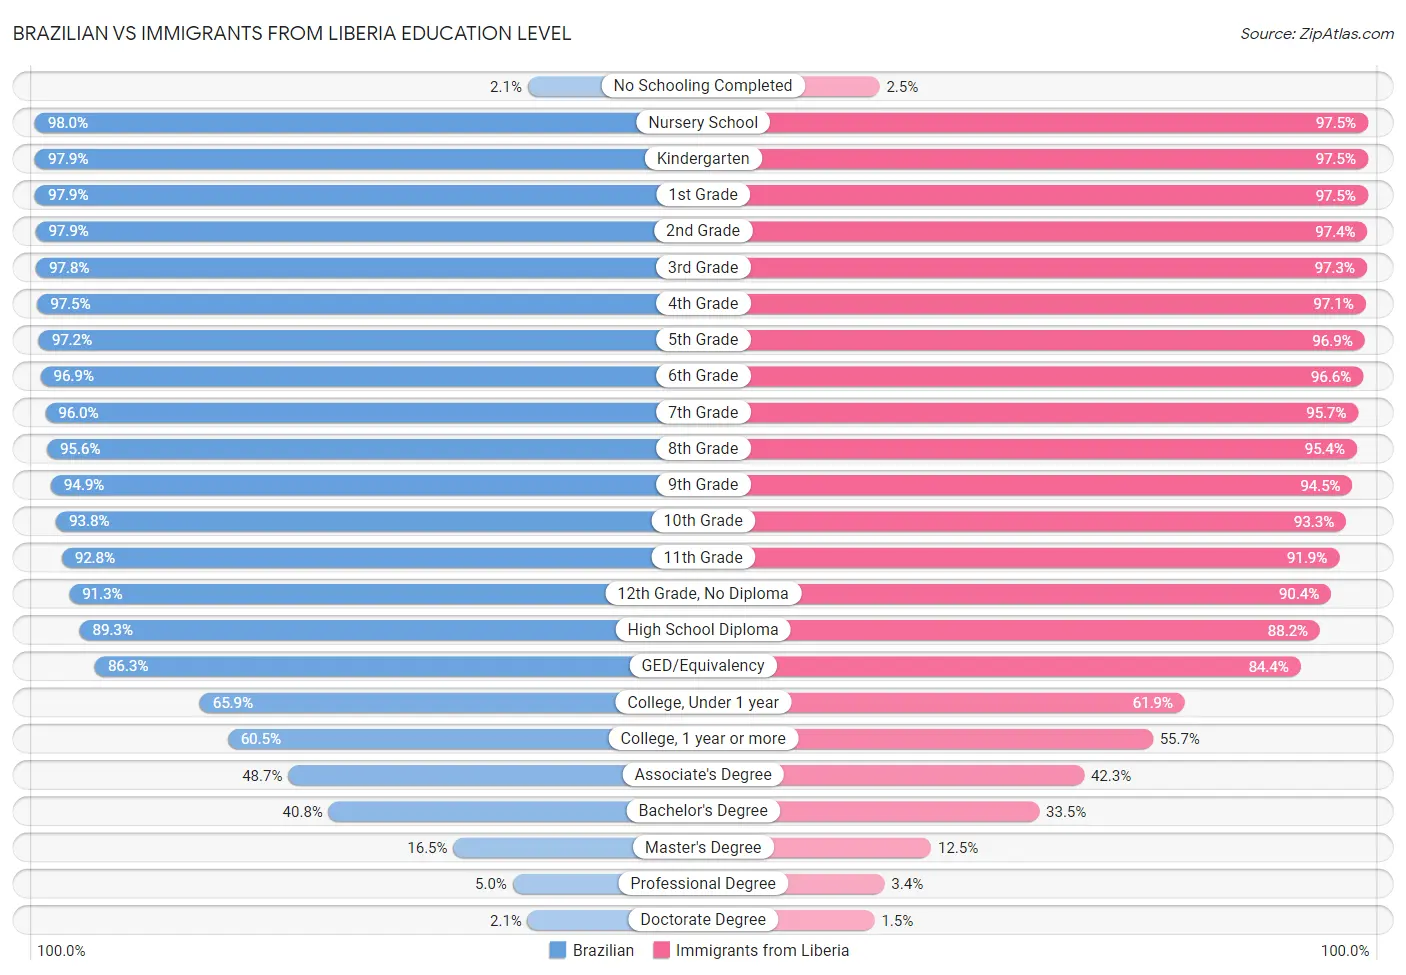 Brazilian vs Immigrants from Liberia Education Level